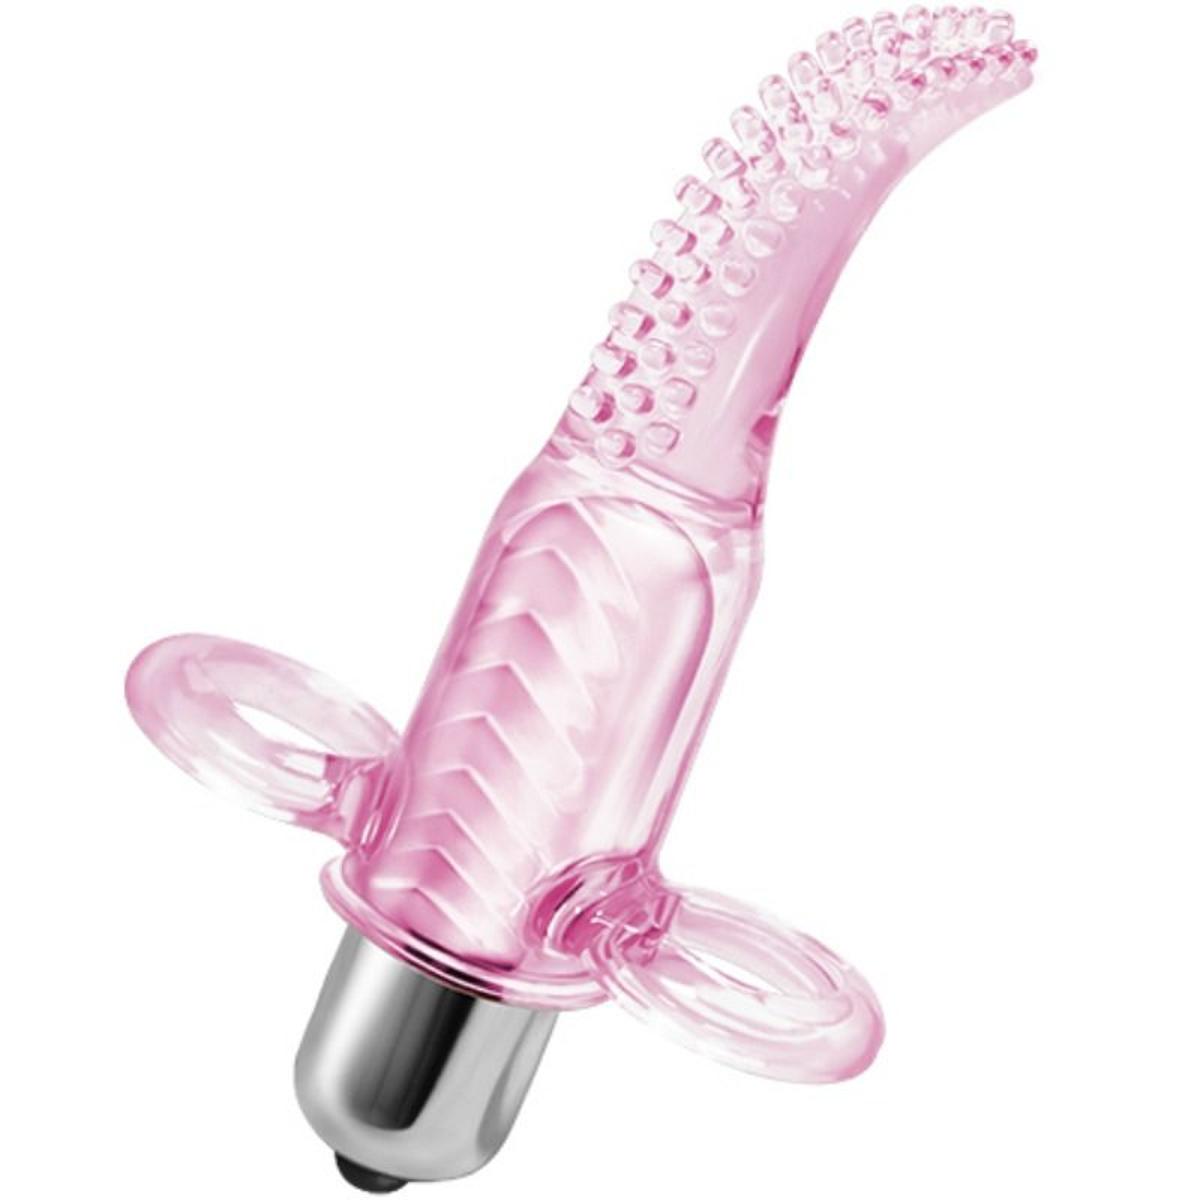 Penishülle Uncut Silicone Penis Enhancer mit Eichelöffnung